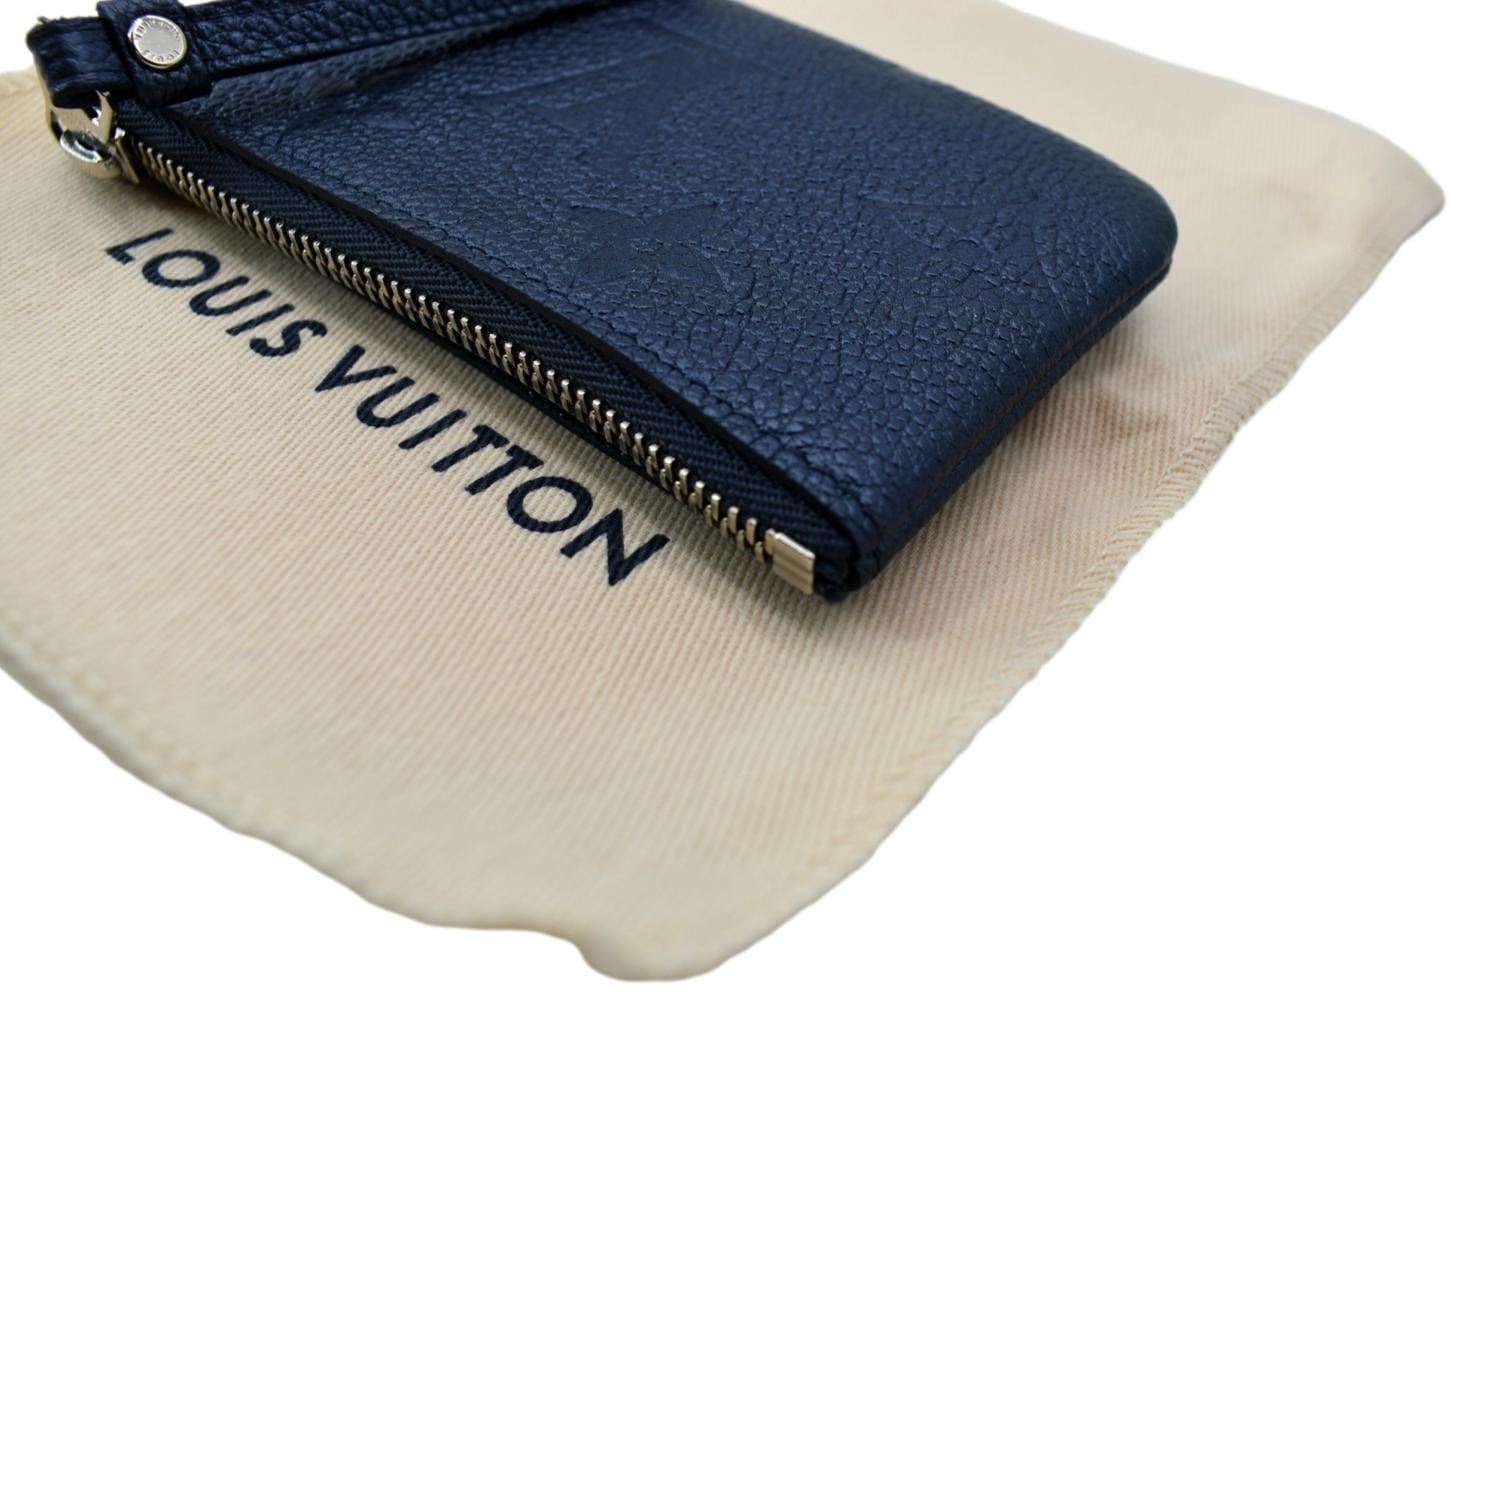 Louis Vuitton, Accessories, Louis Vuitton Authentic Brand New Key Pouch  Monogram Empreinte Leather